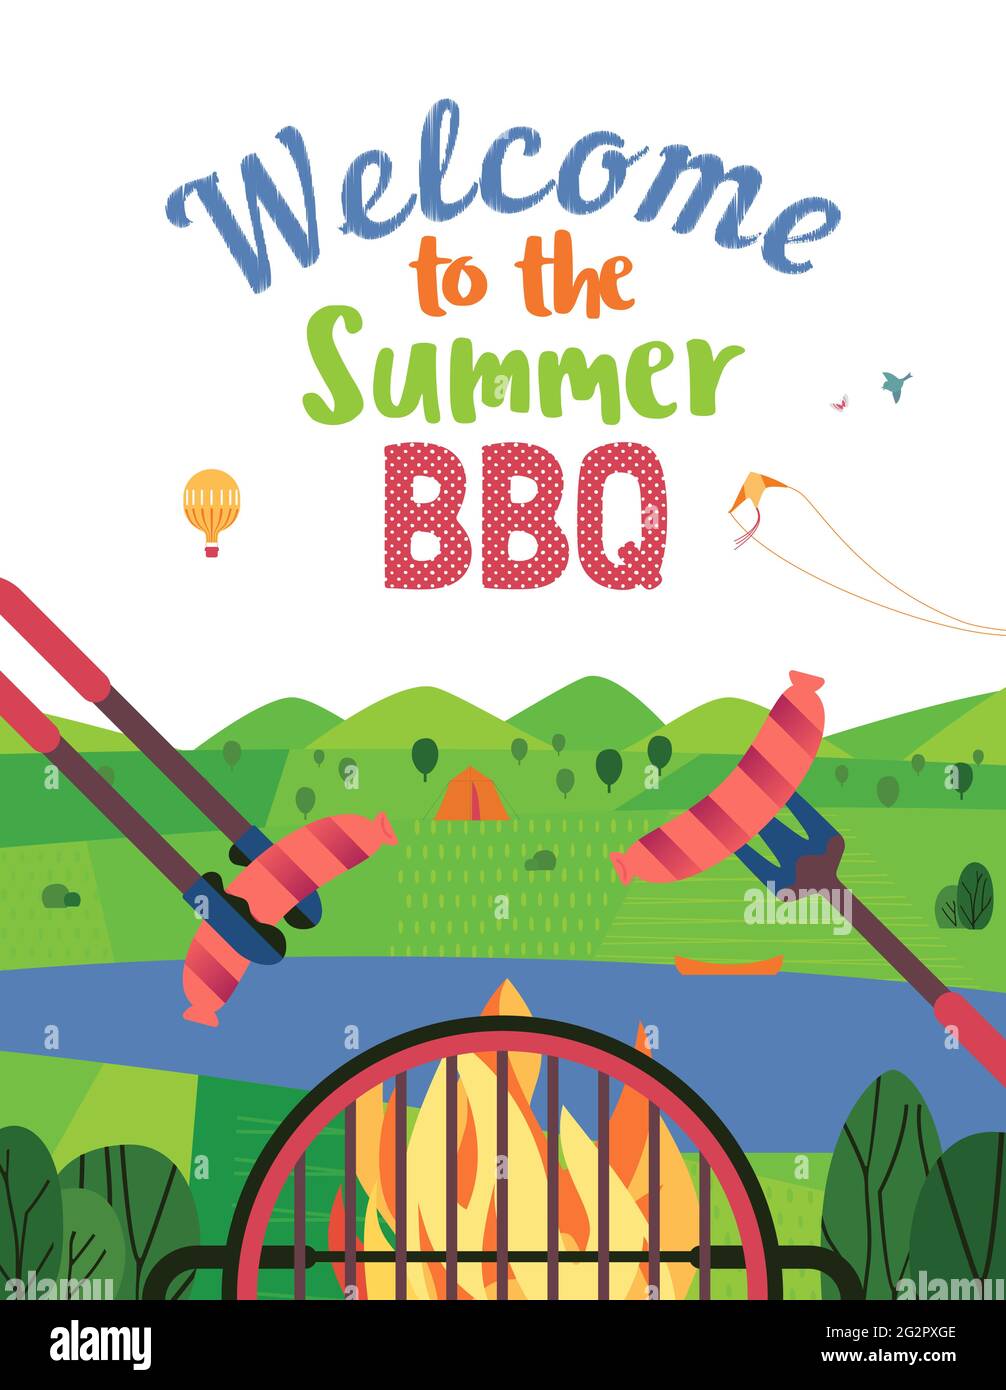 Sommer-Outdoor-Konzept. Cartoon-Poster im Retro-Stil. Willkommen Einladung zum Grillpicknick. Stock Vektor